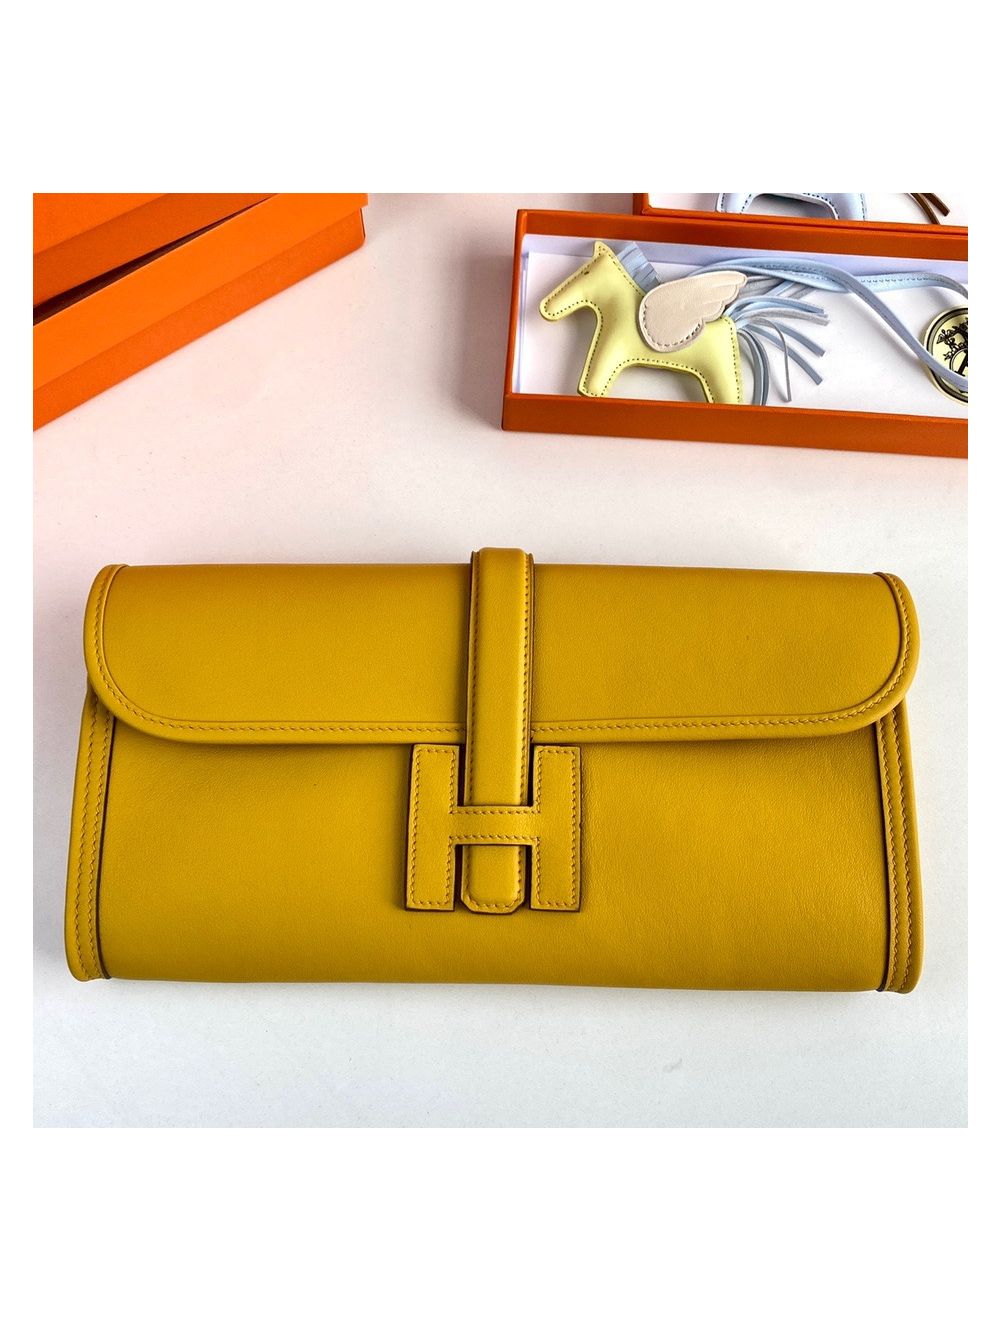 Buy Incredible Range Women Yellow Handbag Yellow Online @ Best Price in  India | Flipkart.com